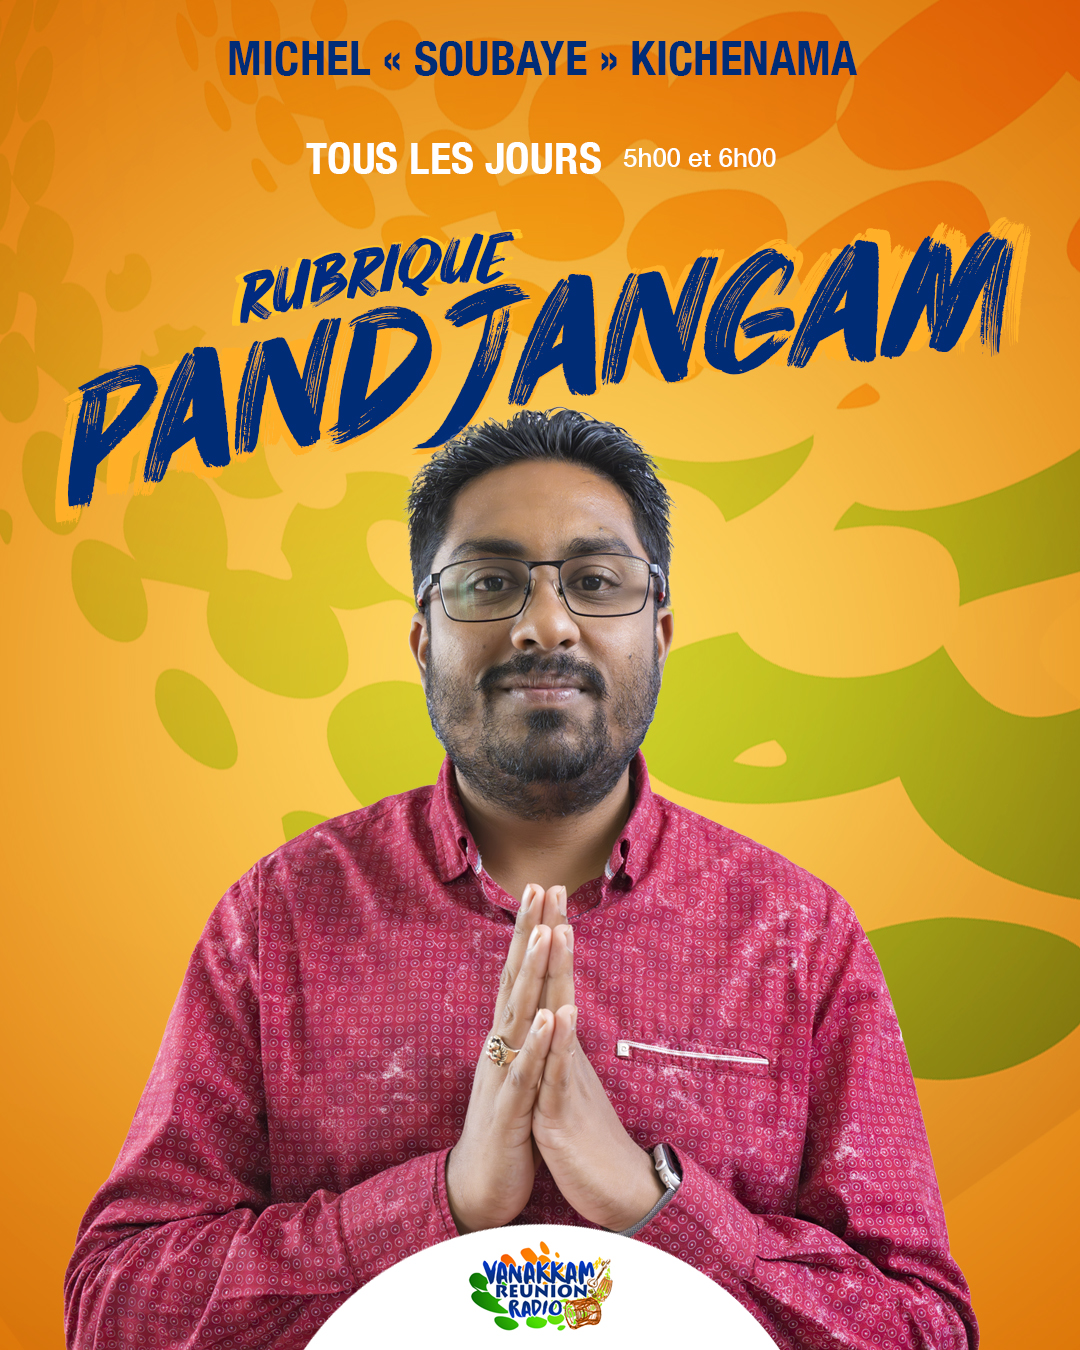 Pandjangam